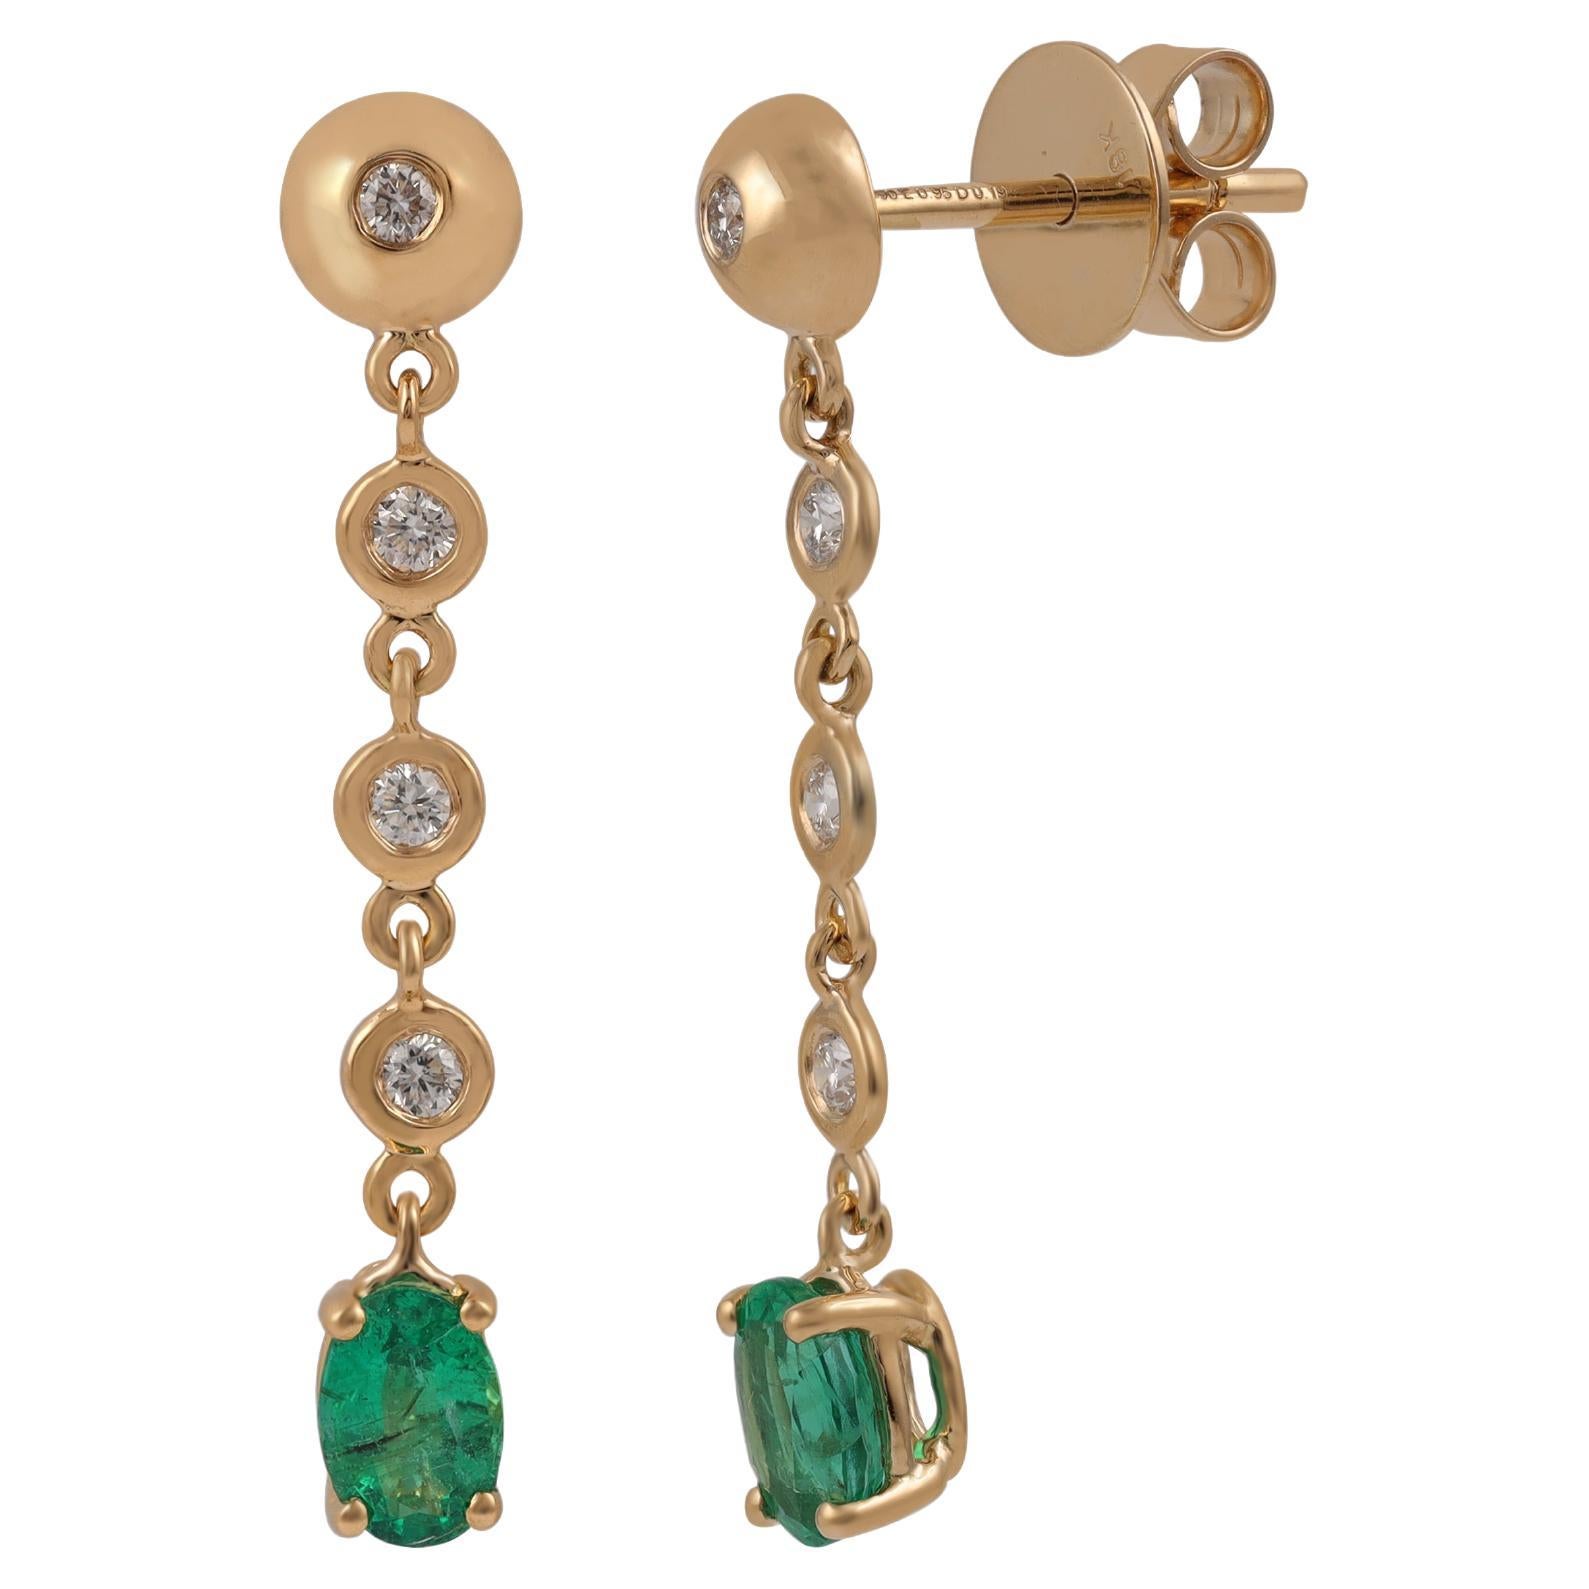 0.95 Carat Zambian Emerald & Diamond Earrings in 18k Gold